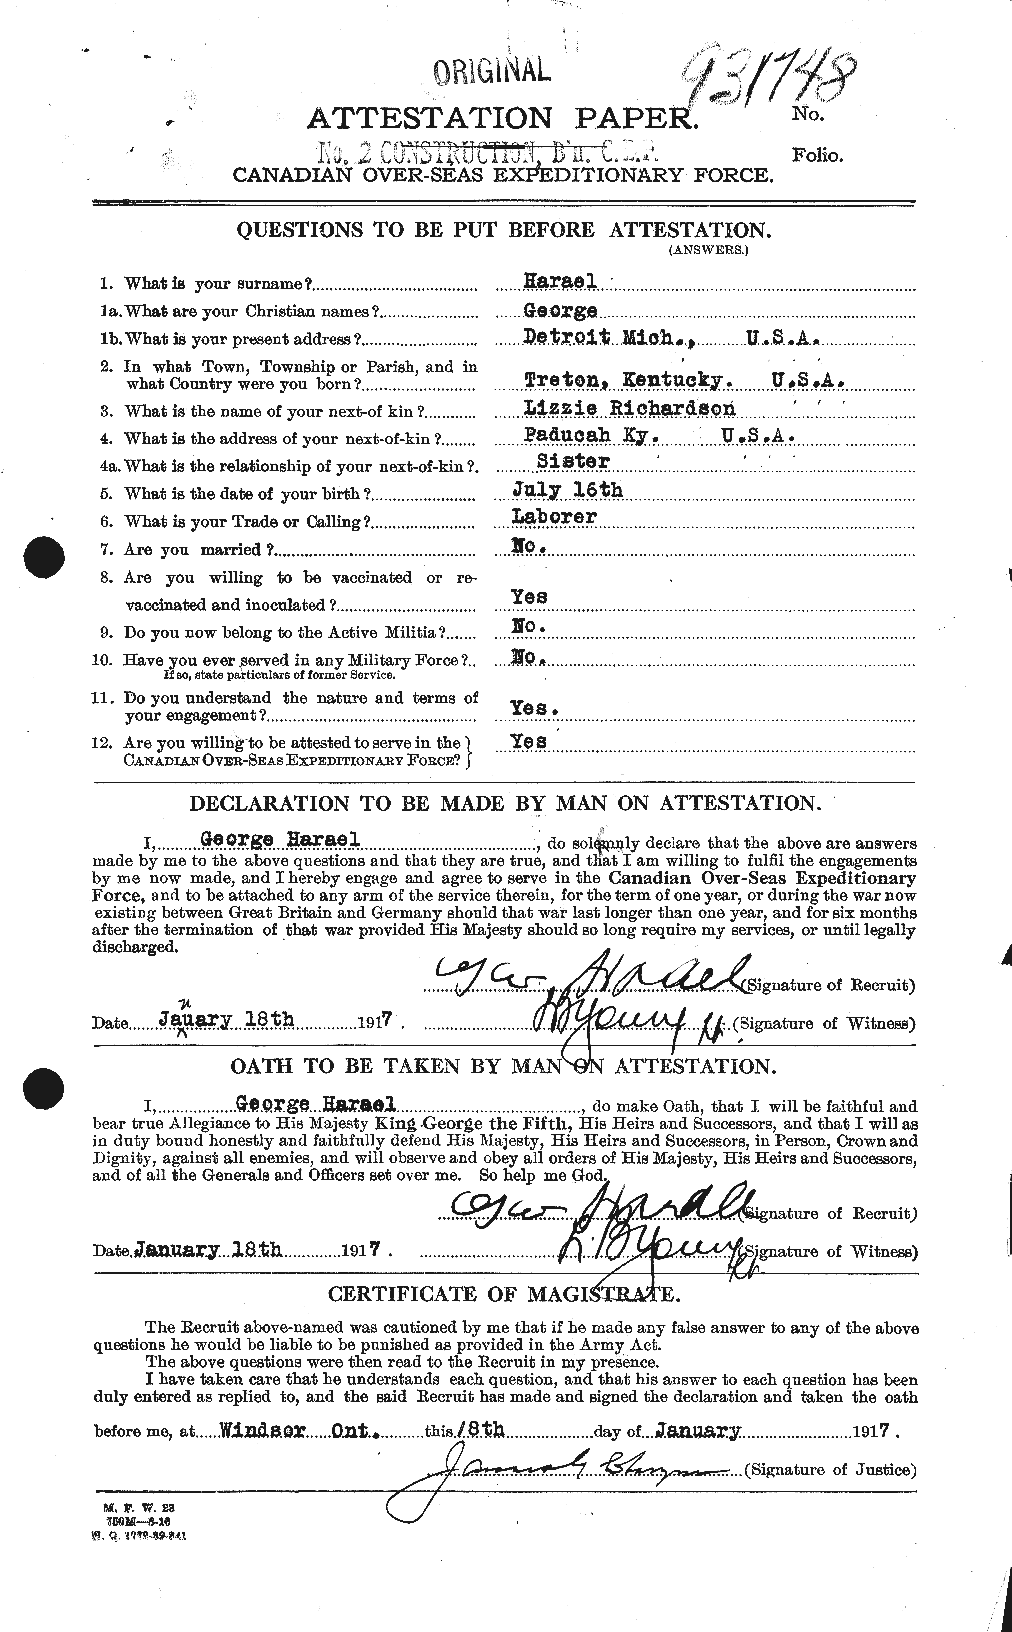 Dossiers du Personnel de la Première Guerre mondiale - CEC 376106a